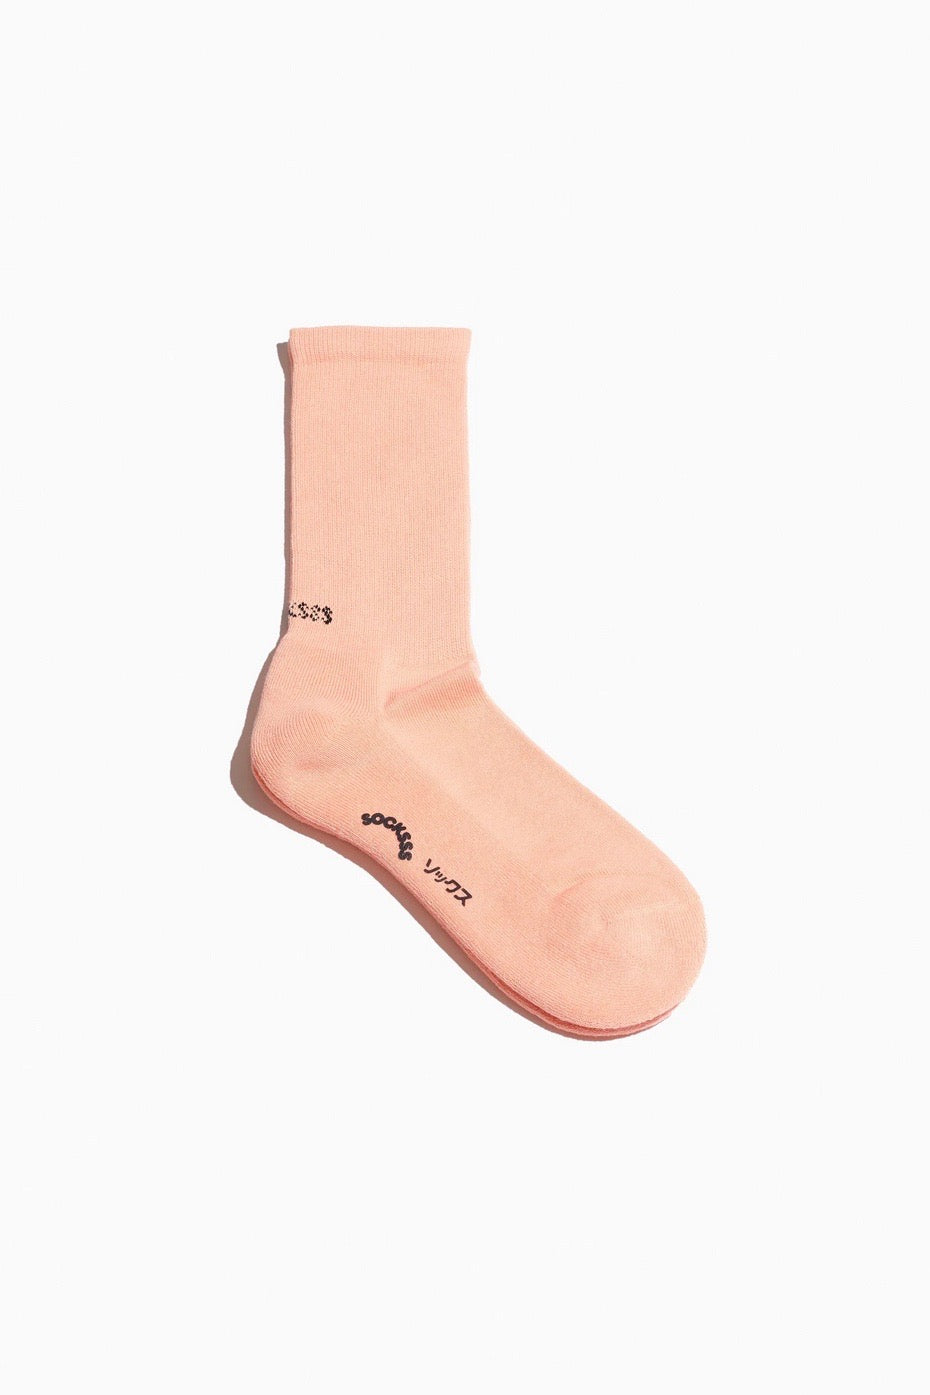 Pfirsichfarbene Socken aus Biobaumwolle von SOCKSSS